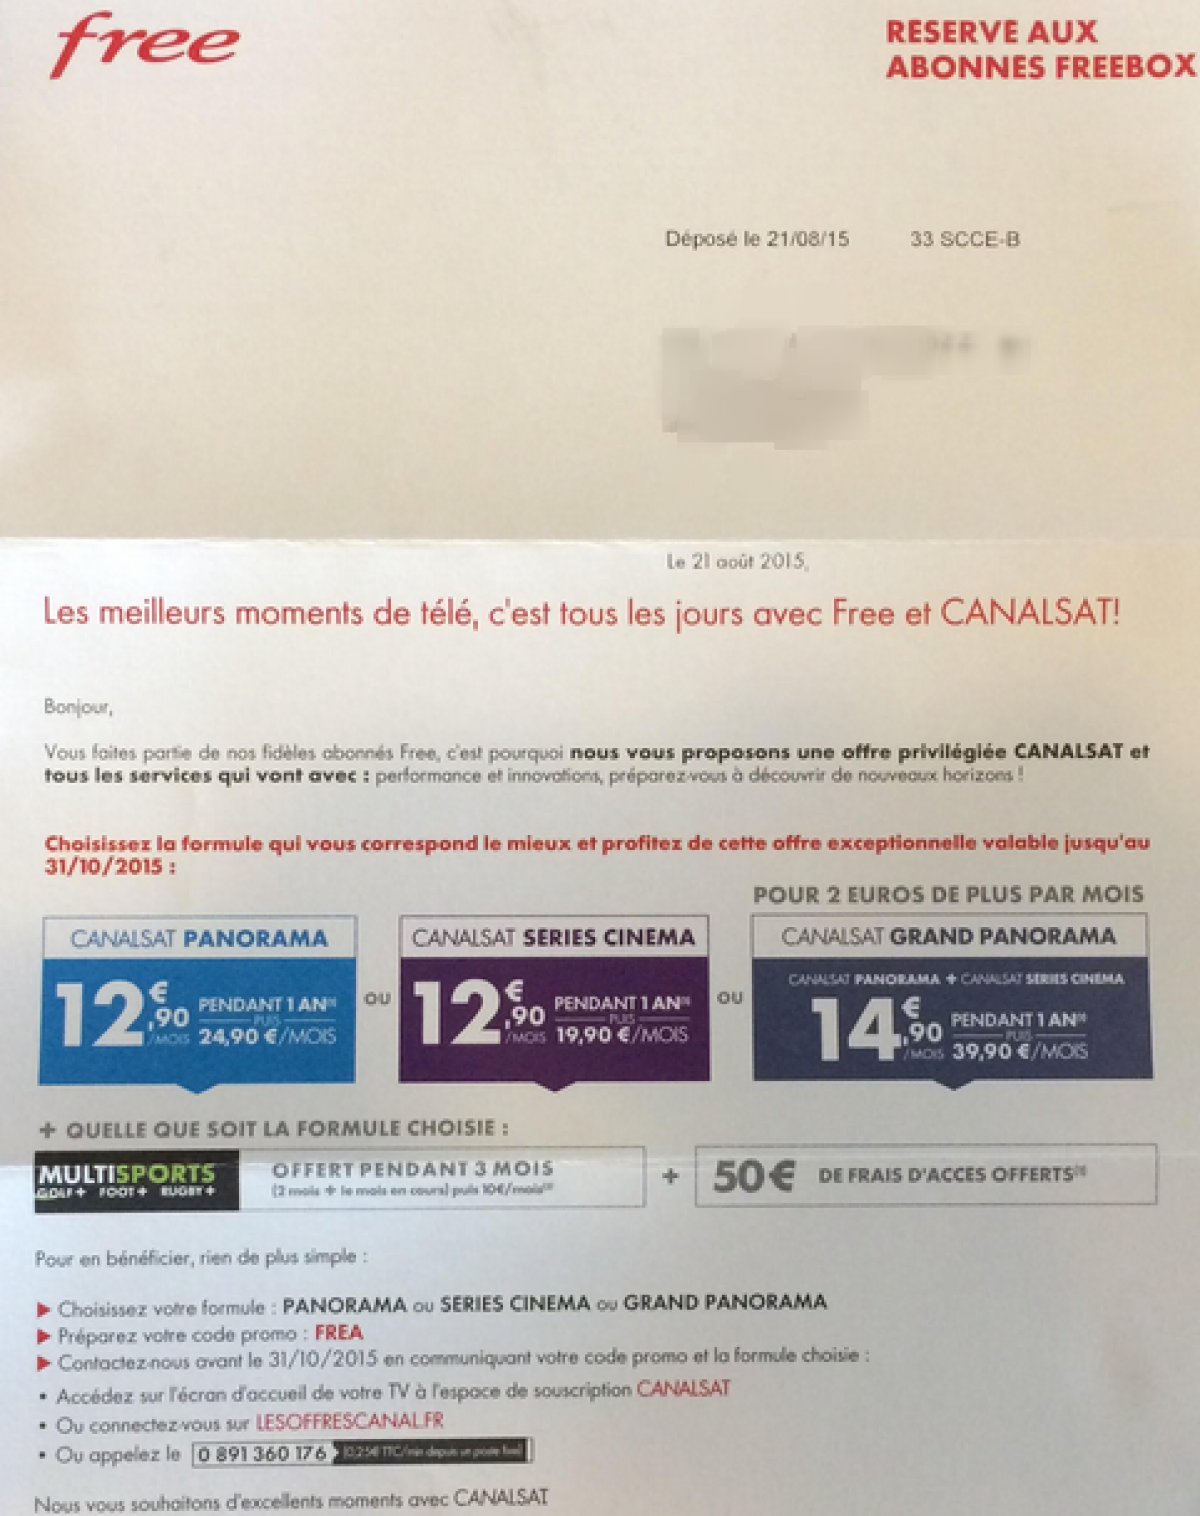 Canalsat envoie un courrier aux « fidèles abonnés Freebox » pour leur faire une offre